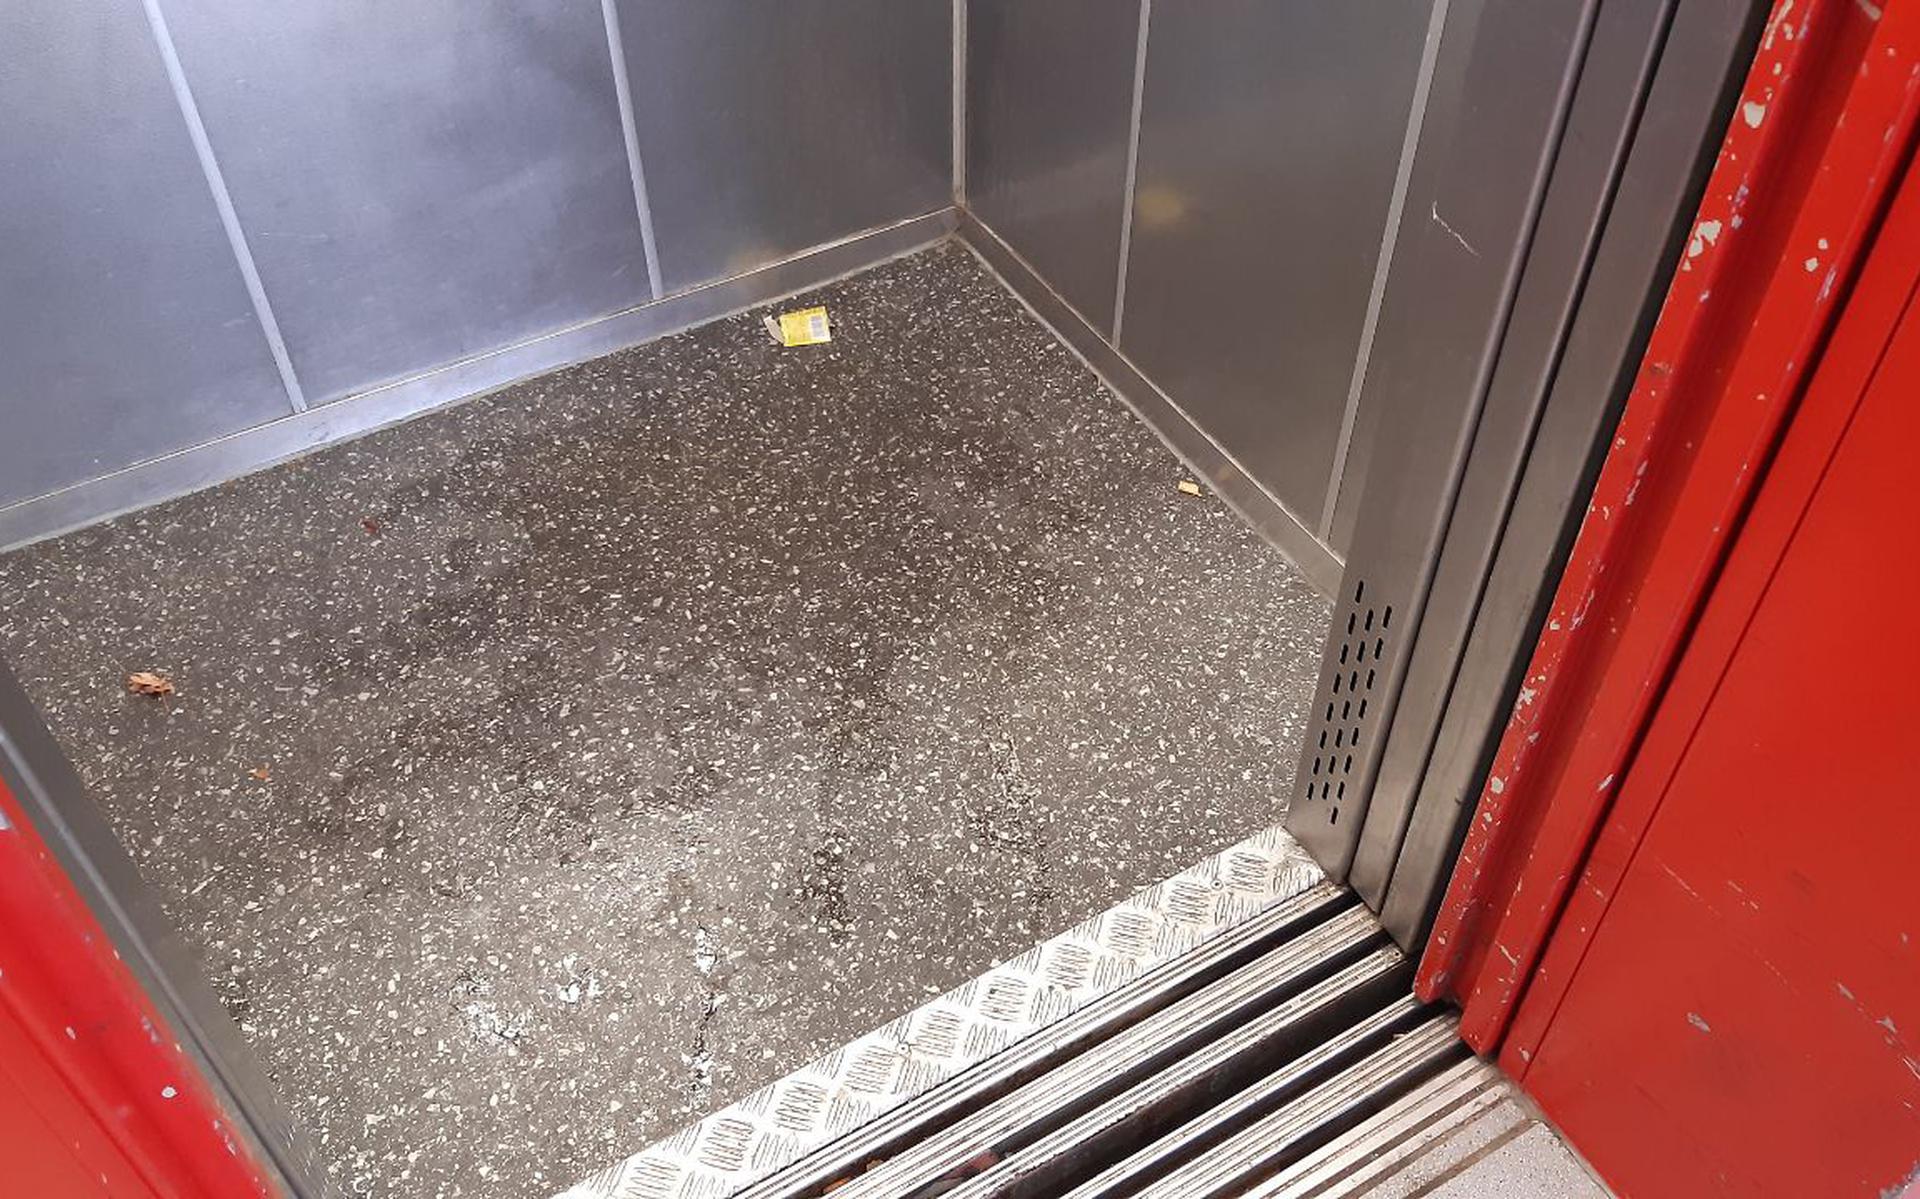 Urine in de lift.